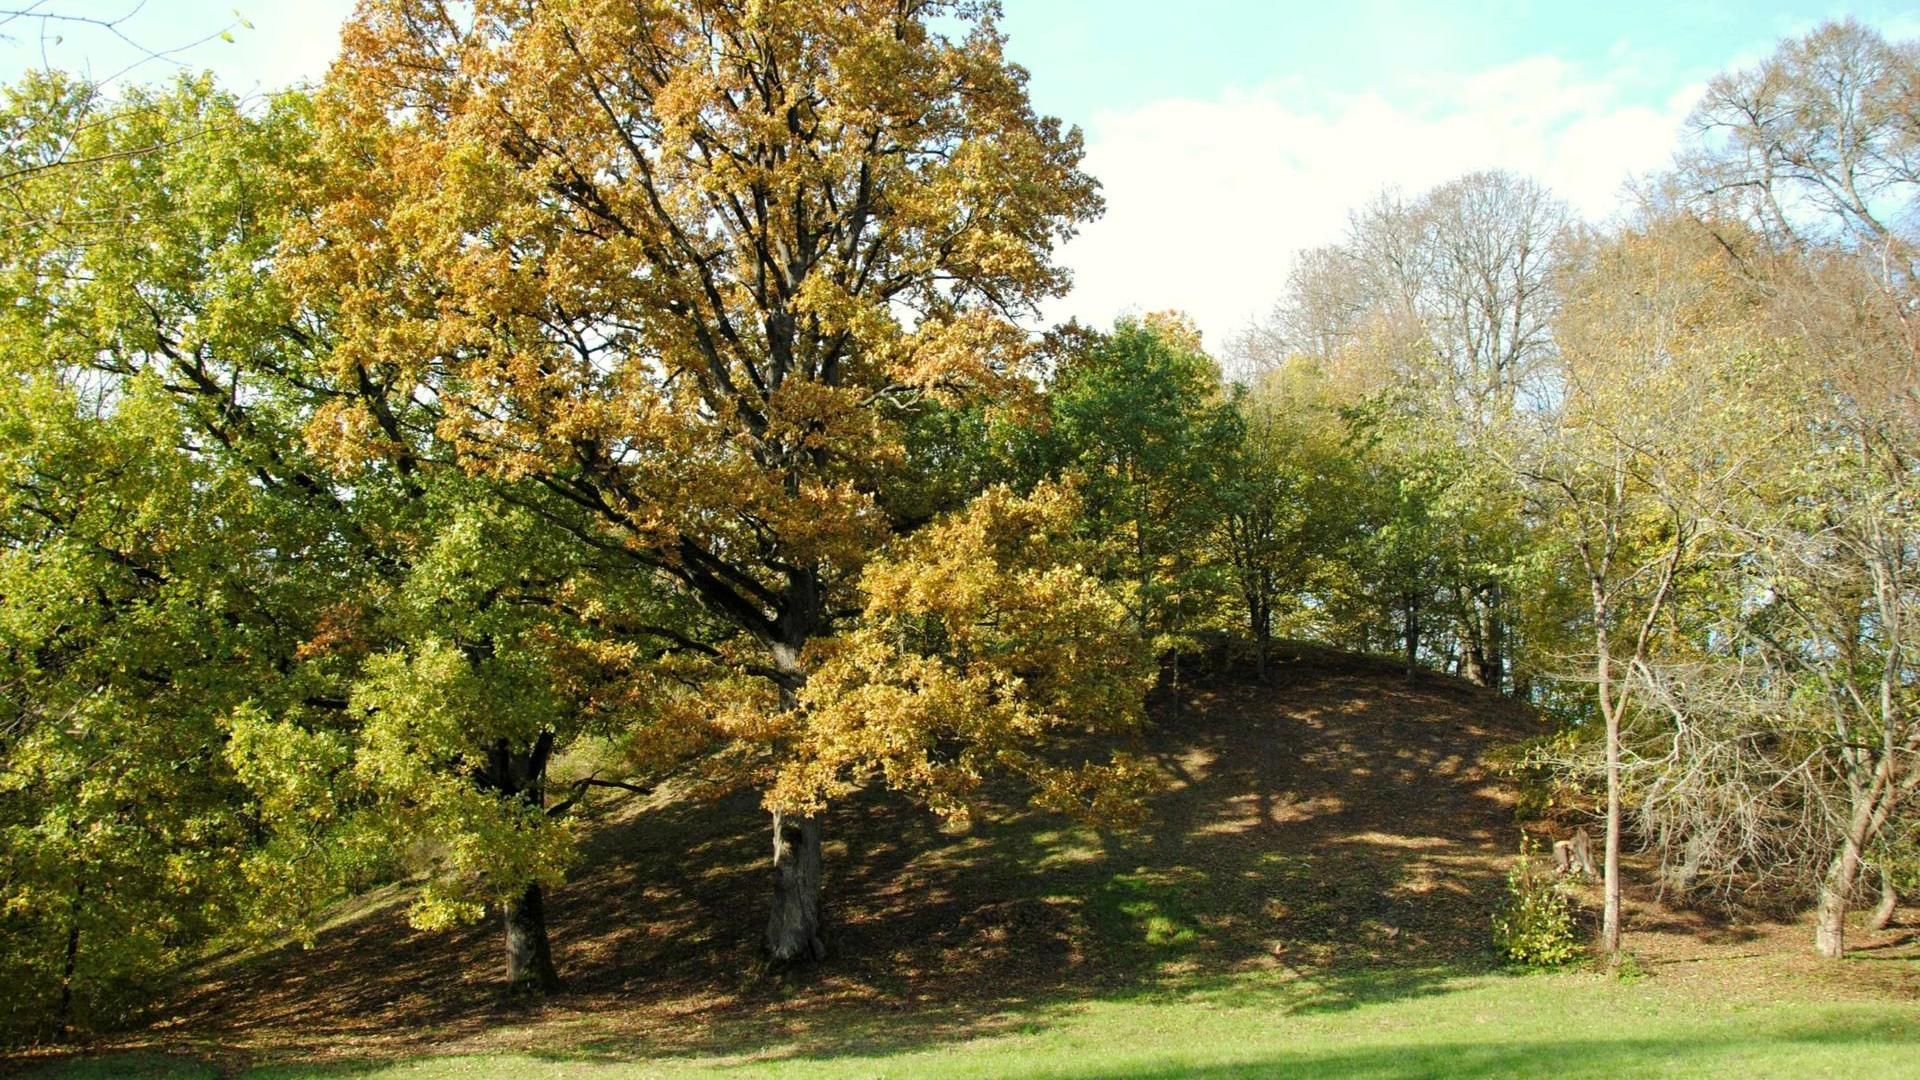 Jaučakiai Mound